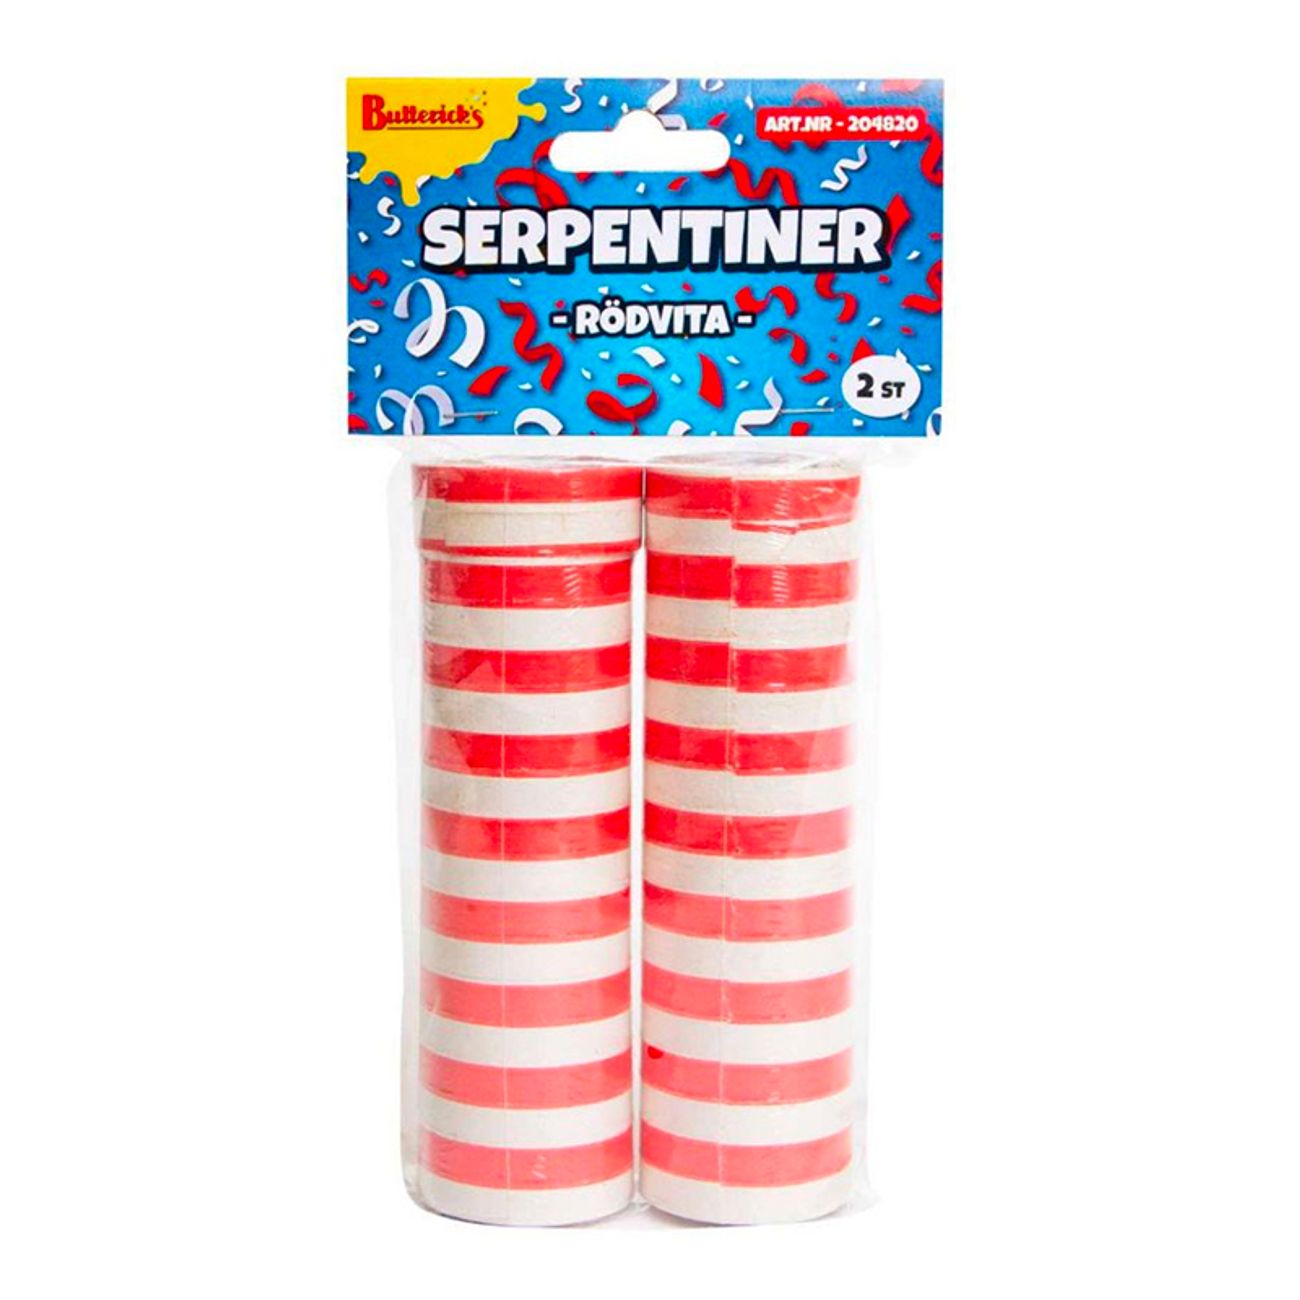 serpentiner-rodvit-76468-1